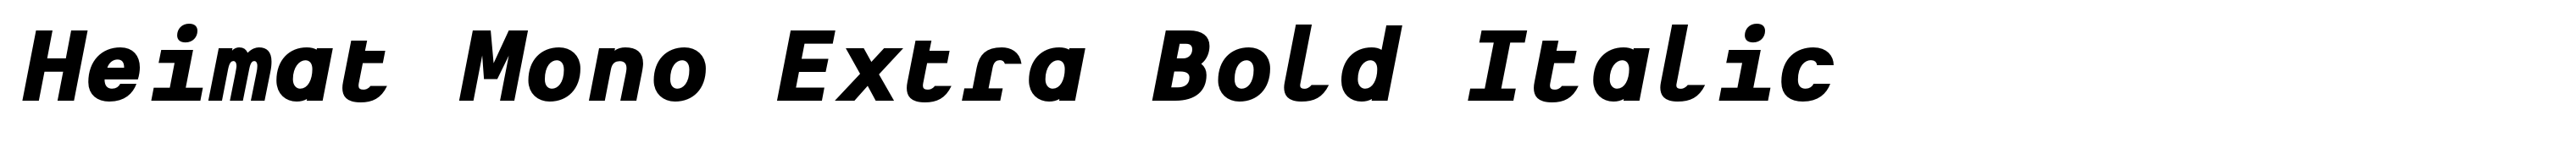 Heimat Mono Extra Bold Italic